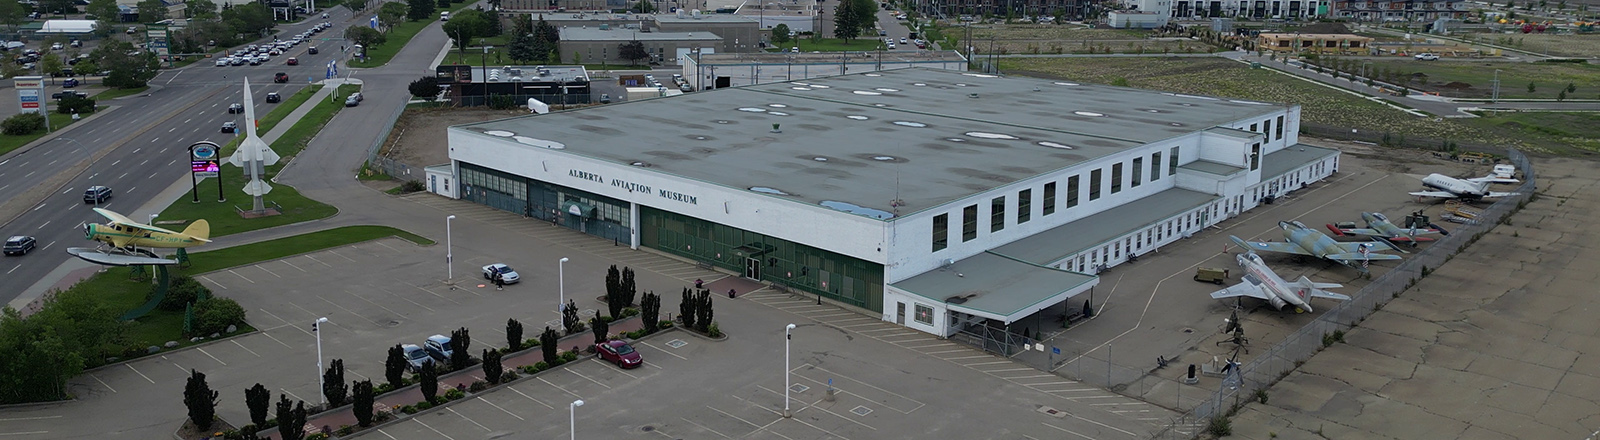 Aerial view of Hangar 14